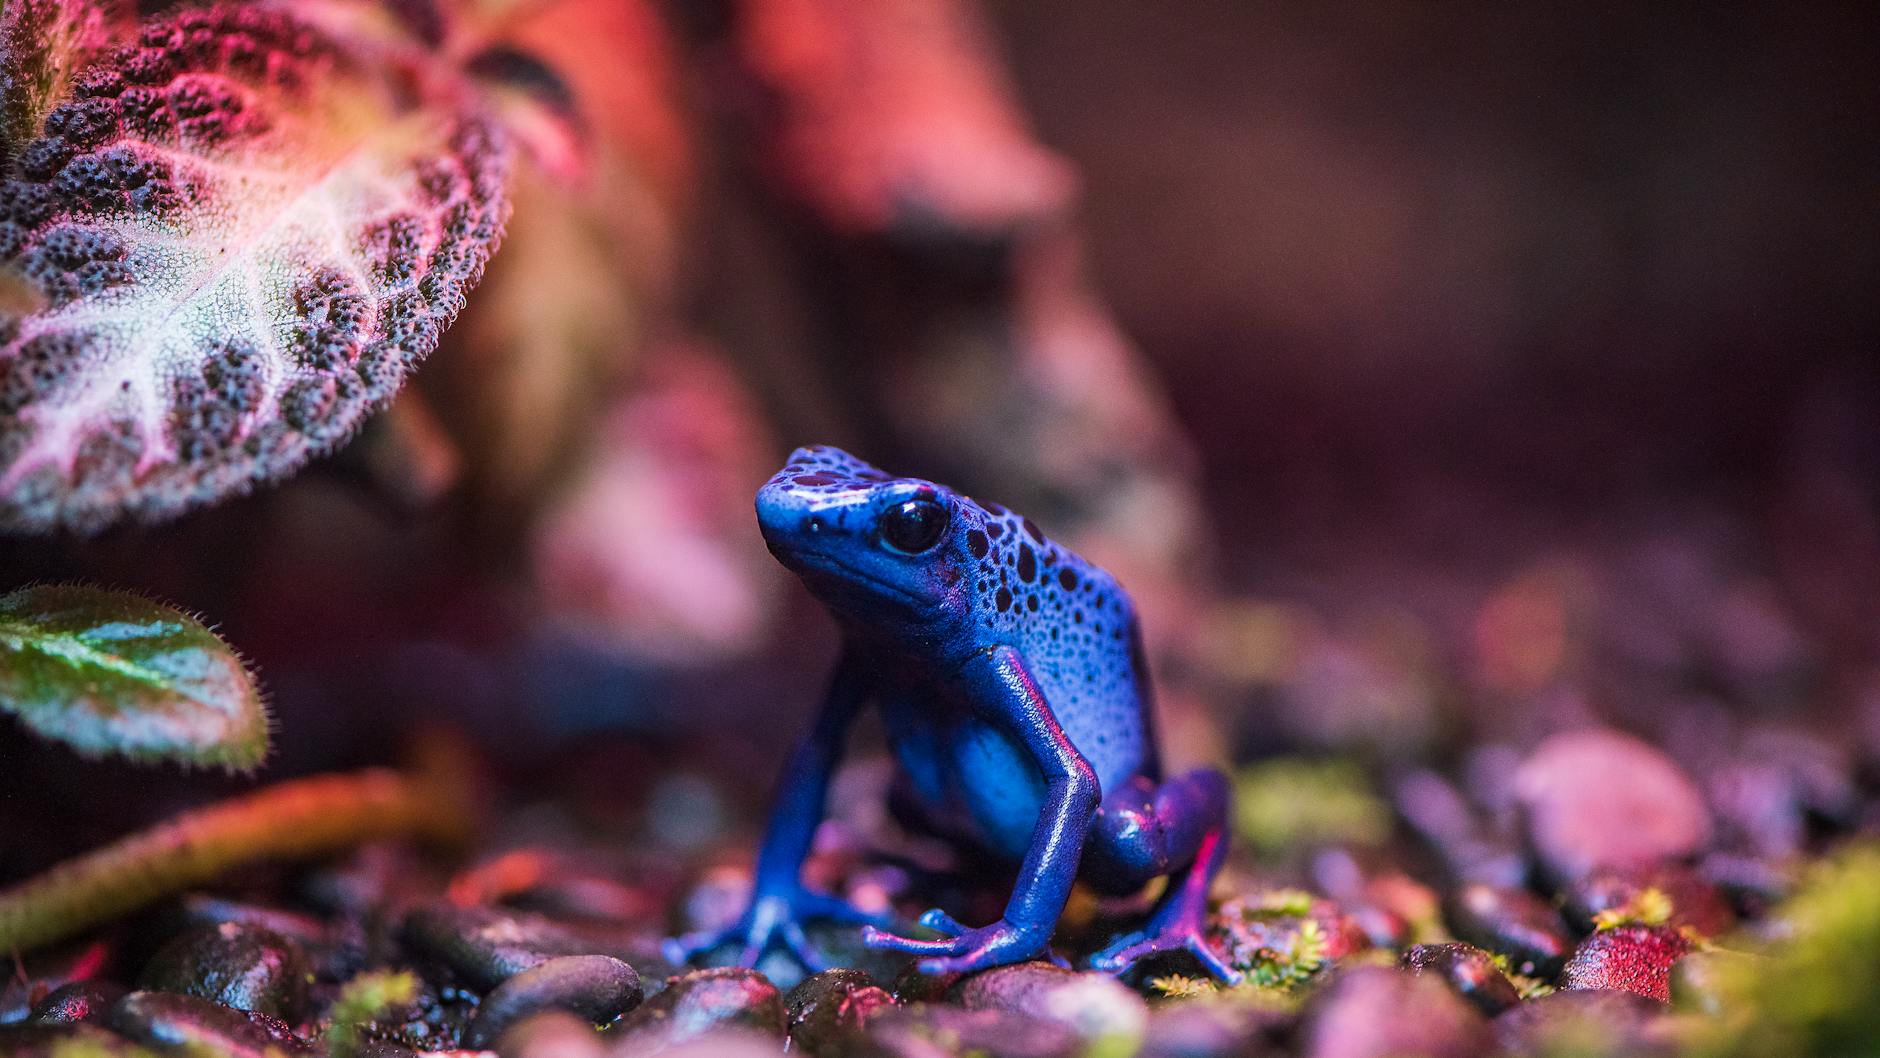 Meet the Poison-Arrow Frog